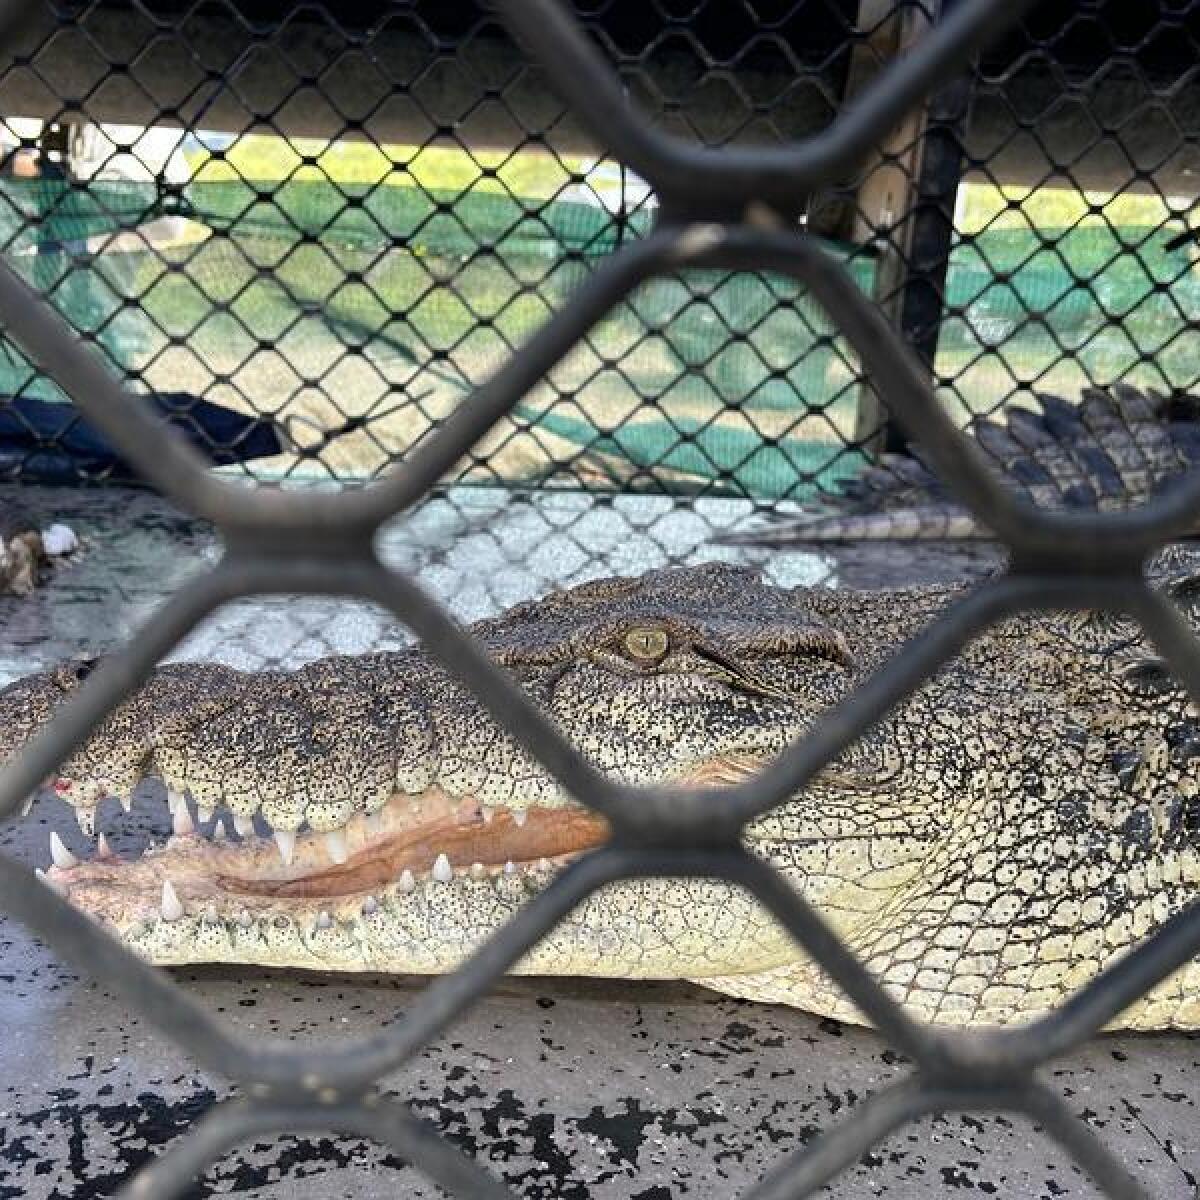 A crocodile in a cage.